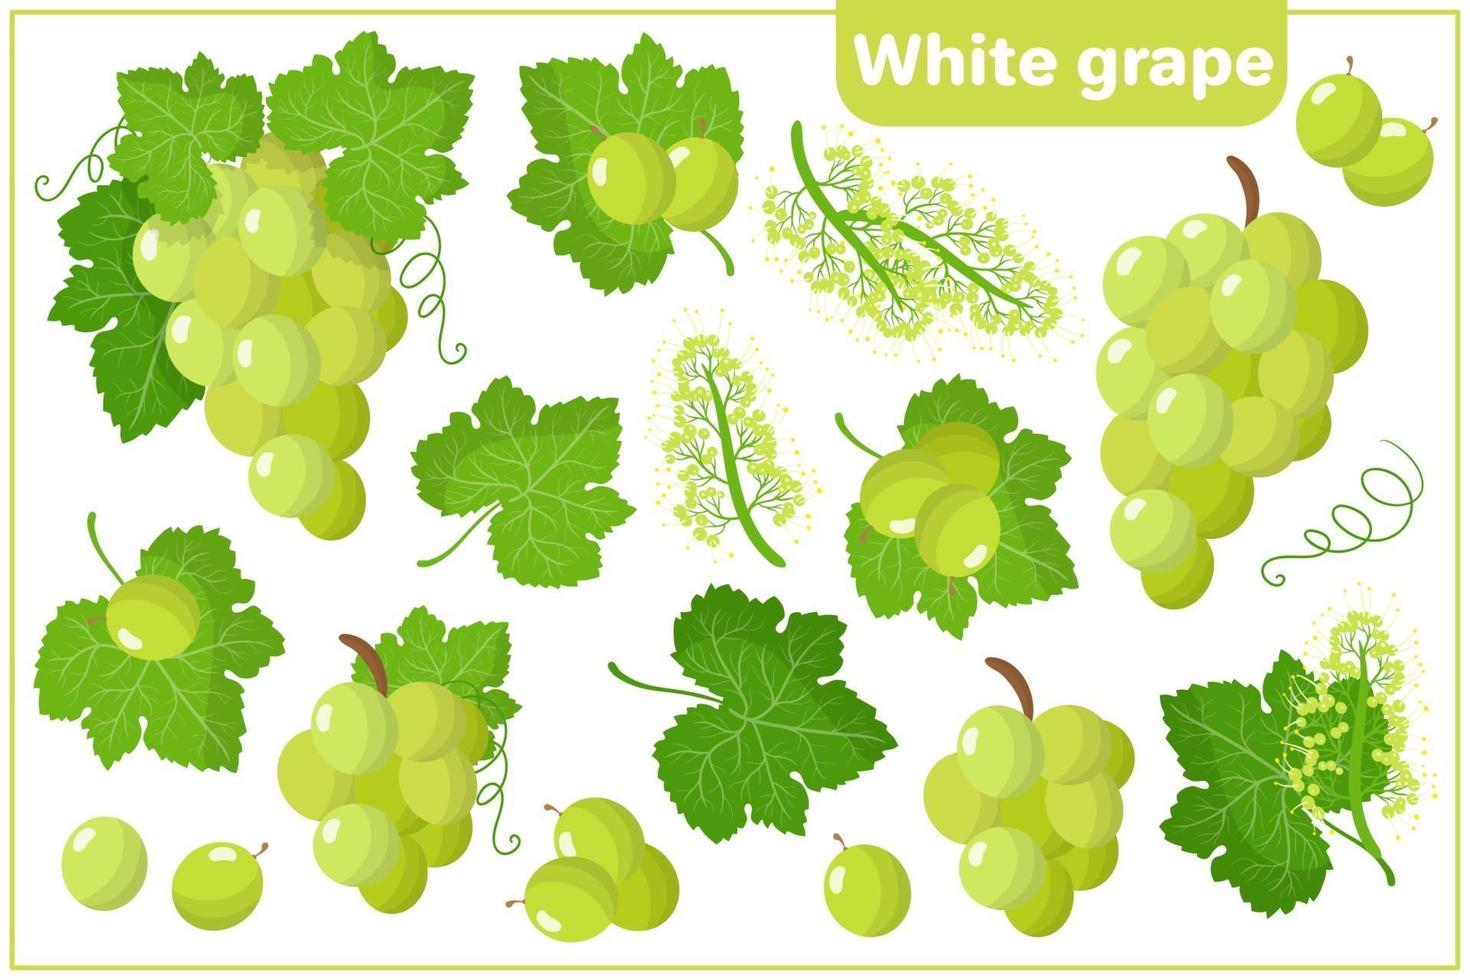 serie di illustrazioni vettoriali di cartone animato con frutta esotica uva bianca isolato su priorità bassa bianca